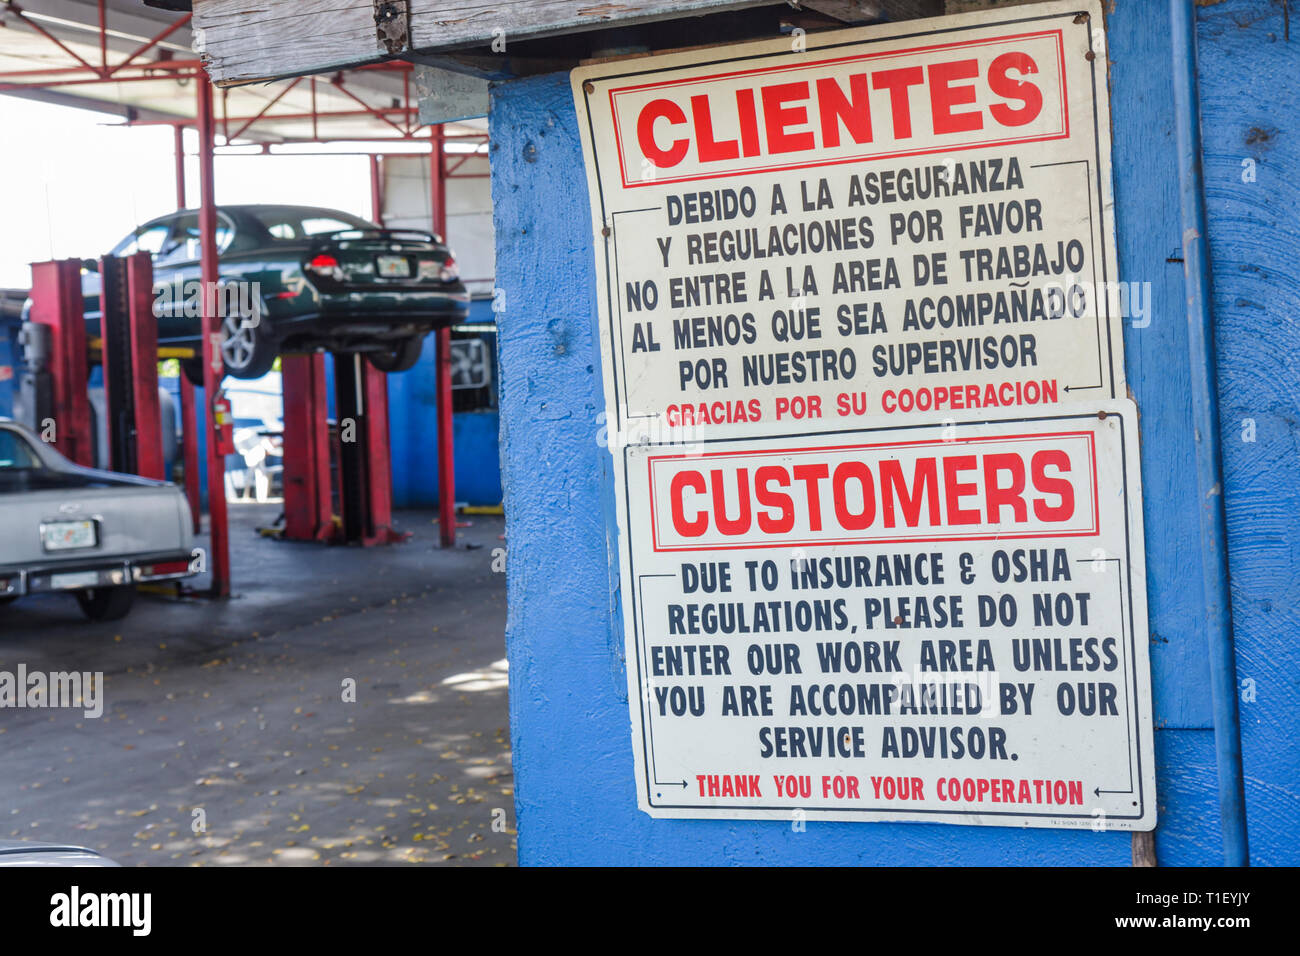 Miami Florida, Garage Auto Reparatur Mechaniker, Zeichen Englisch Spanisch Sprache Sprachen zweisprachig, Arbeitsbereich Einschränkungen, geben Sie nicht OSHA insur Stockfoto